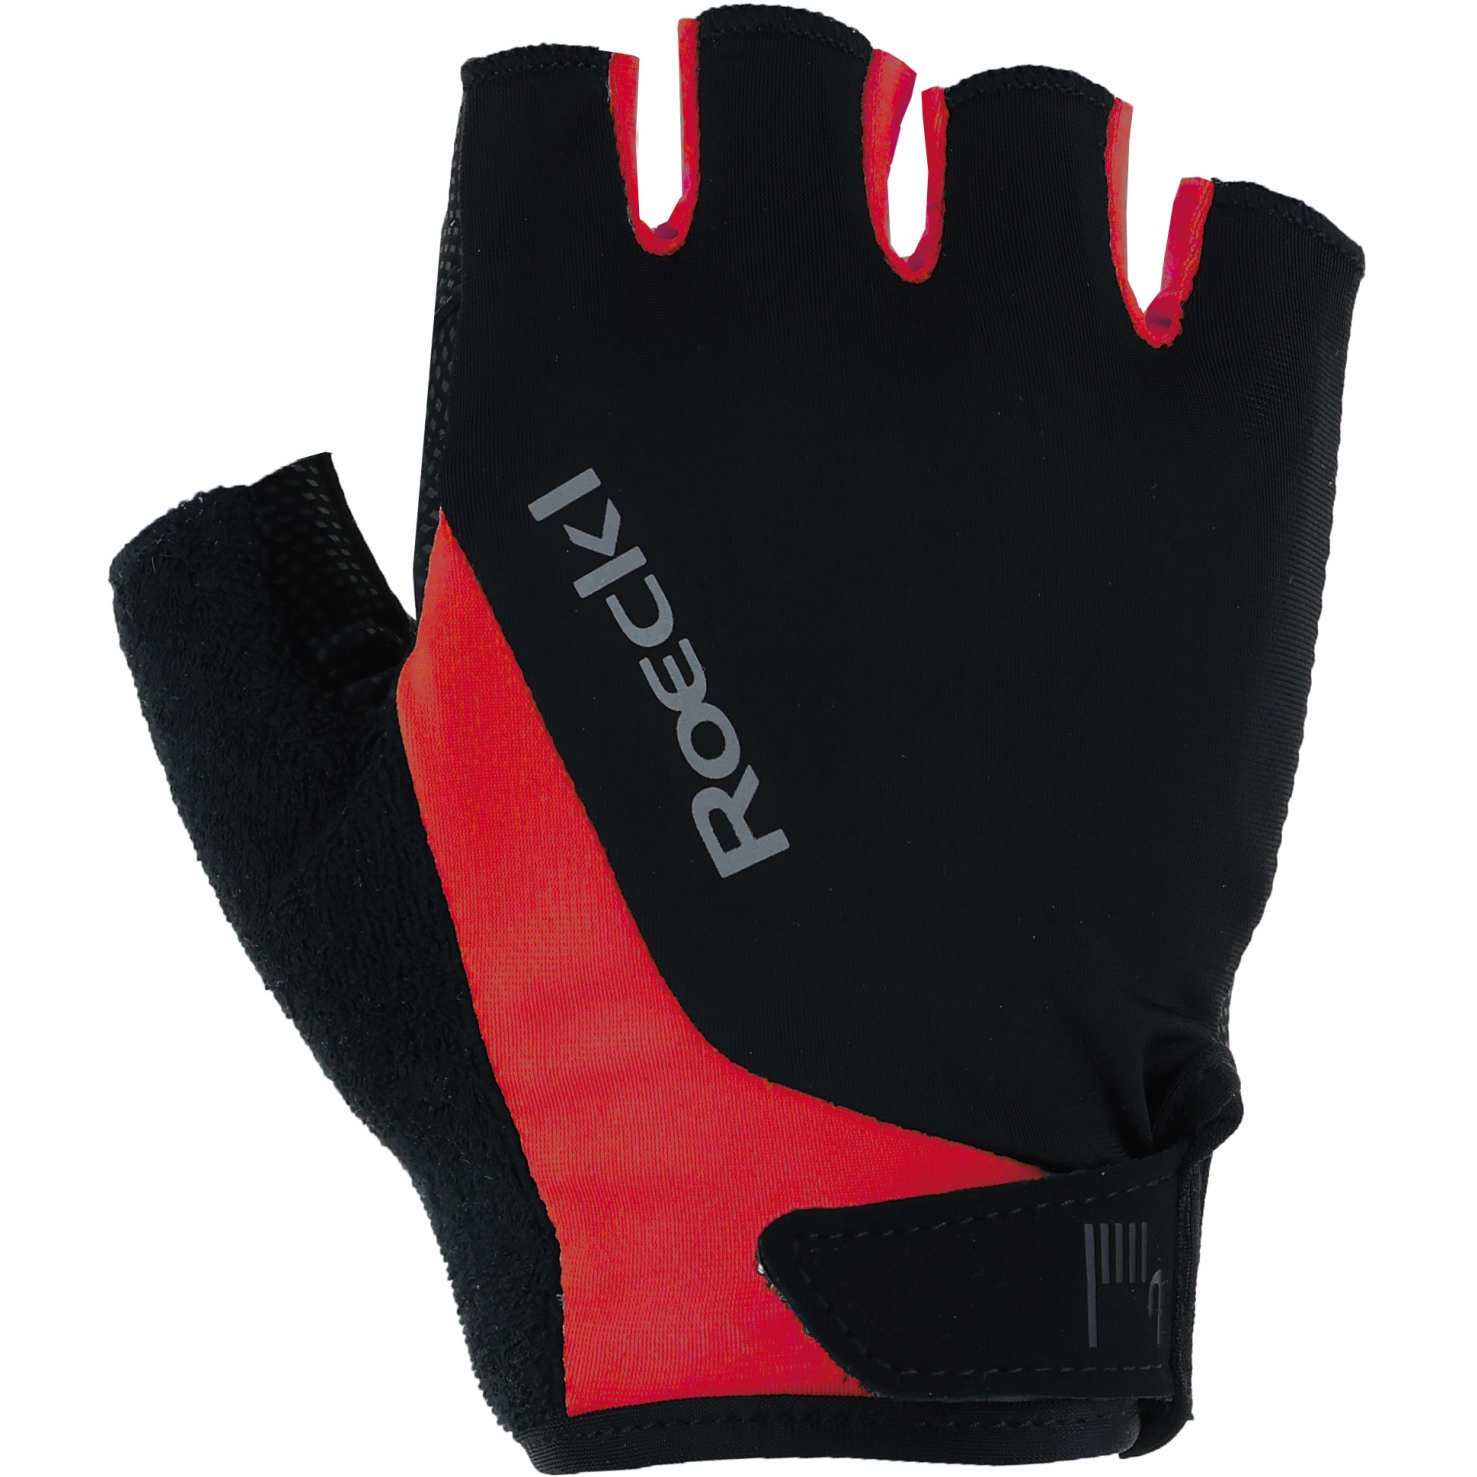 Produktbild von Roeckl Sports Basel 2 Fahrradhandschuhe - schwarz/rot 9300